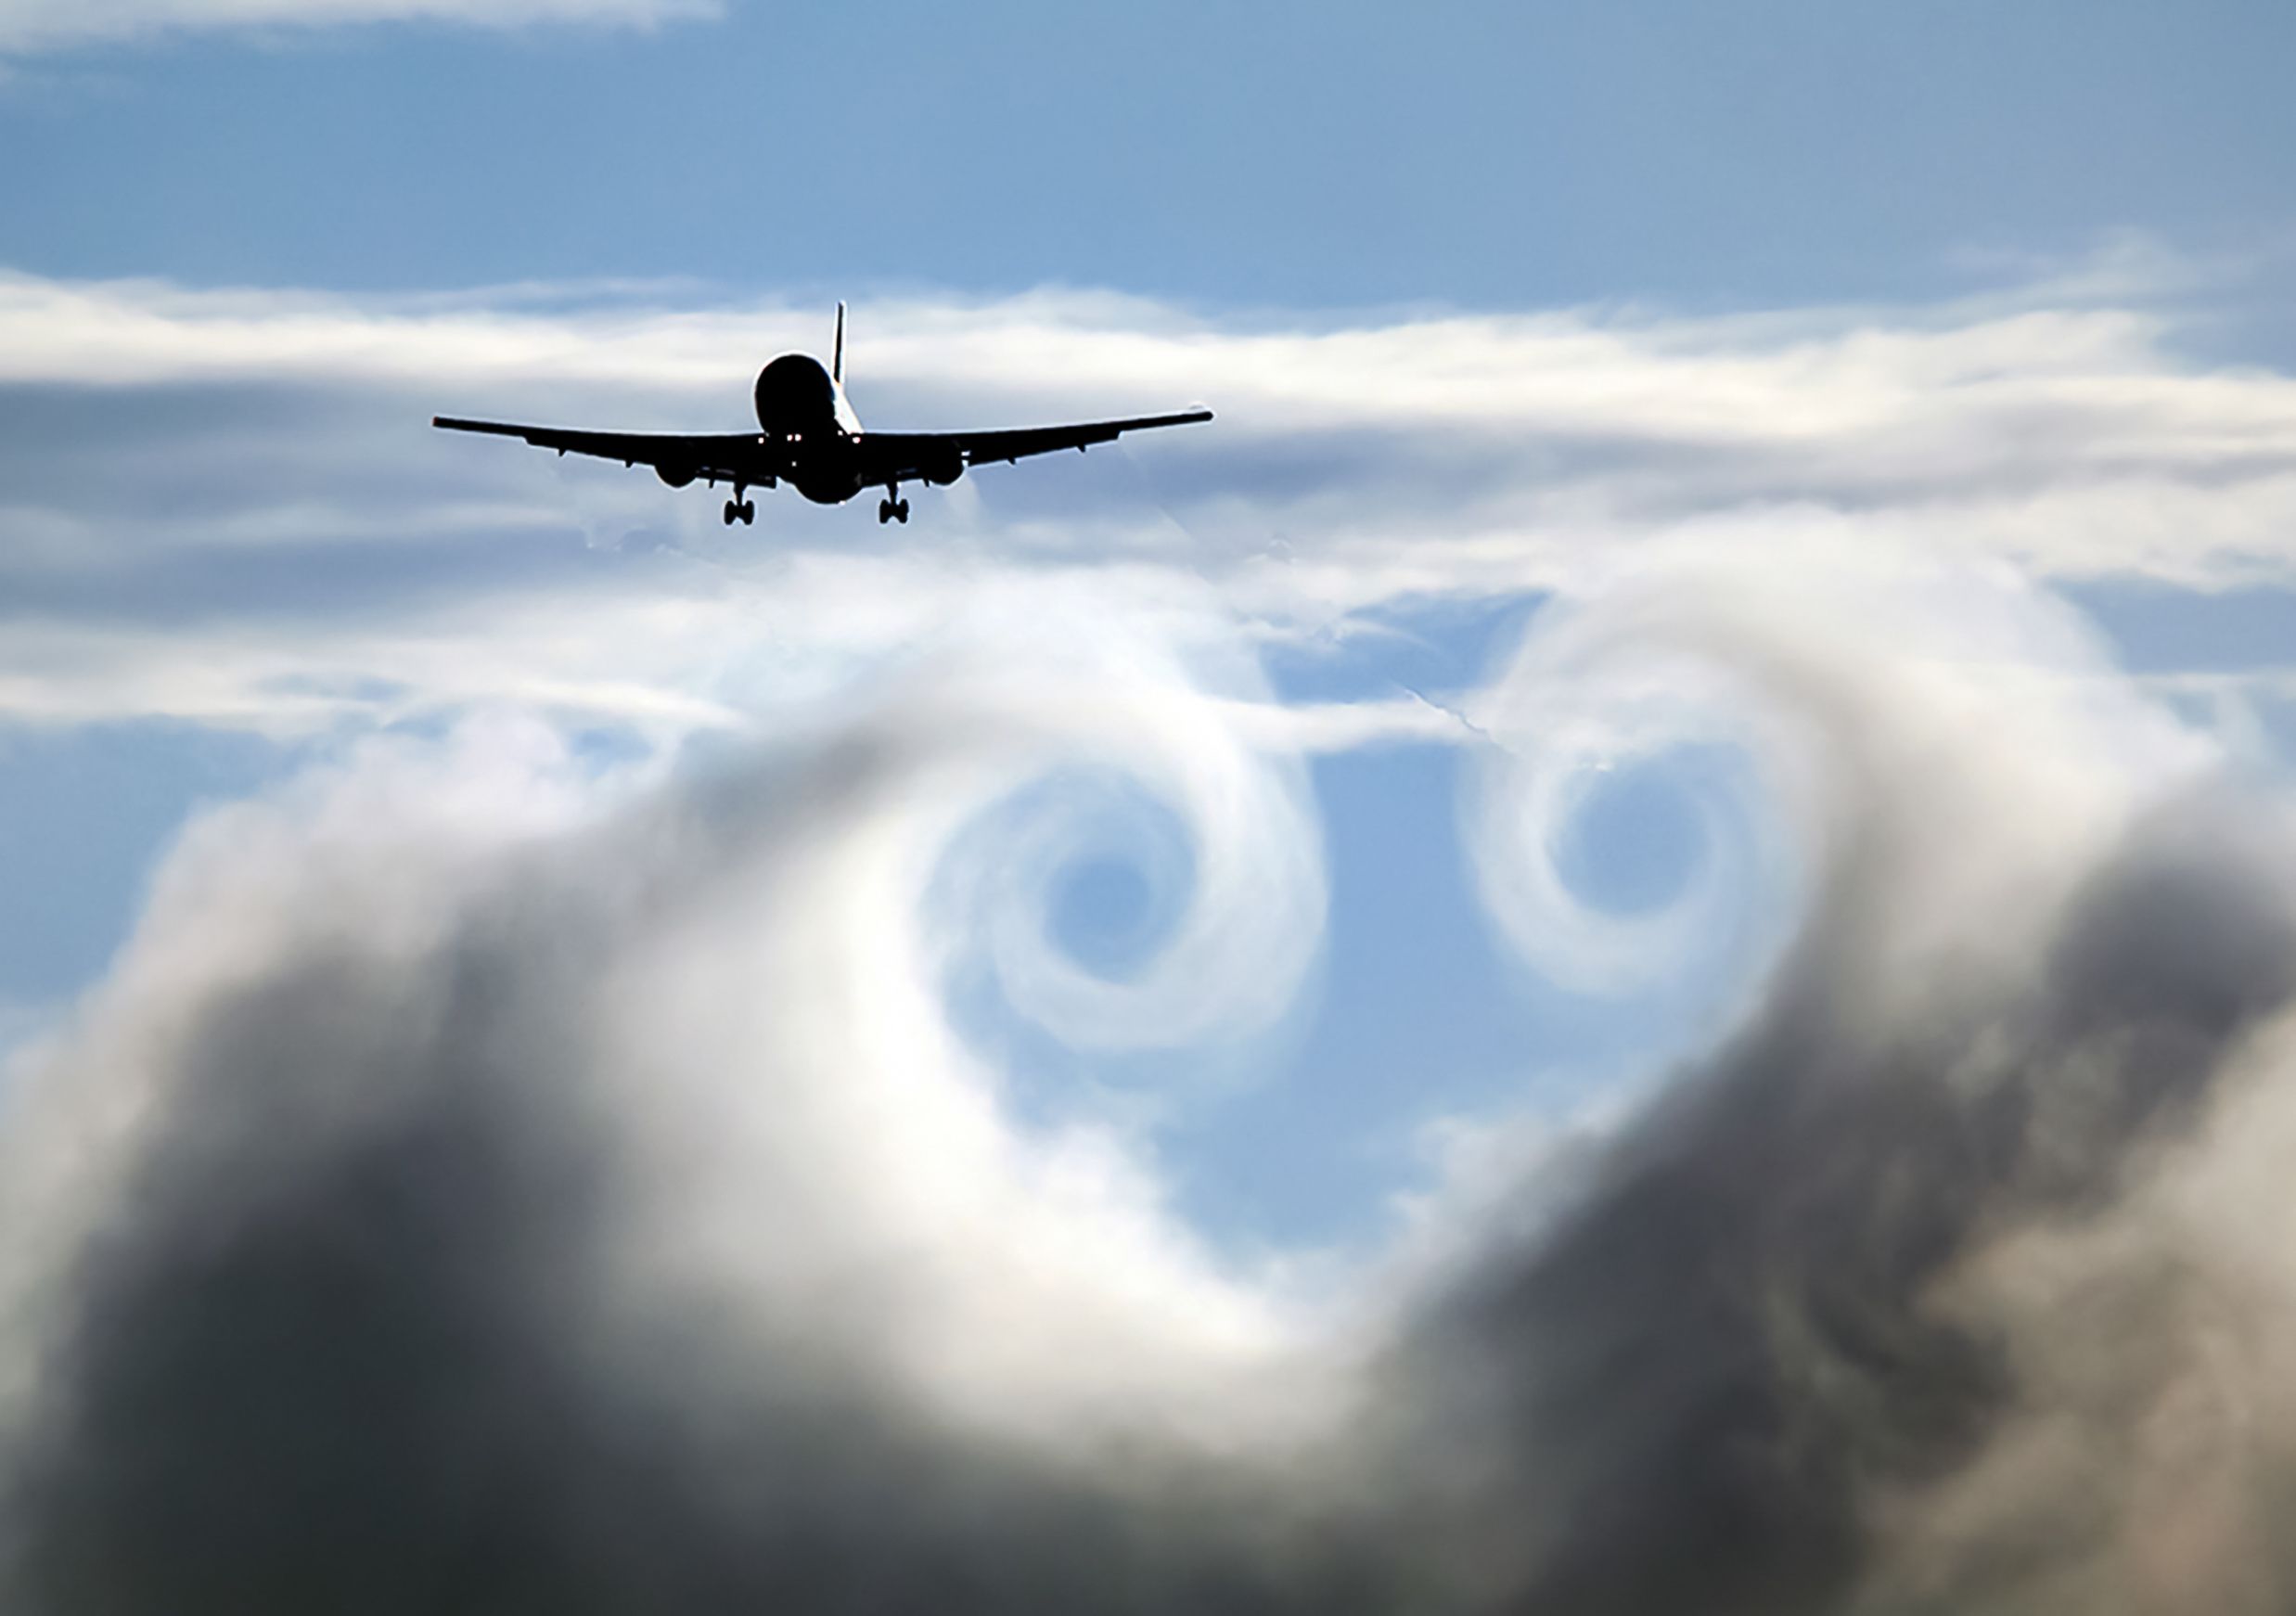 Wake turbulence behind a Boeing 767.